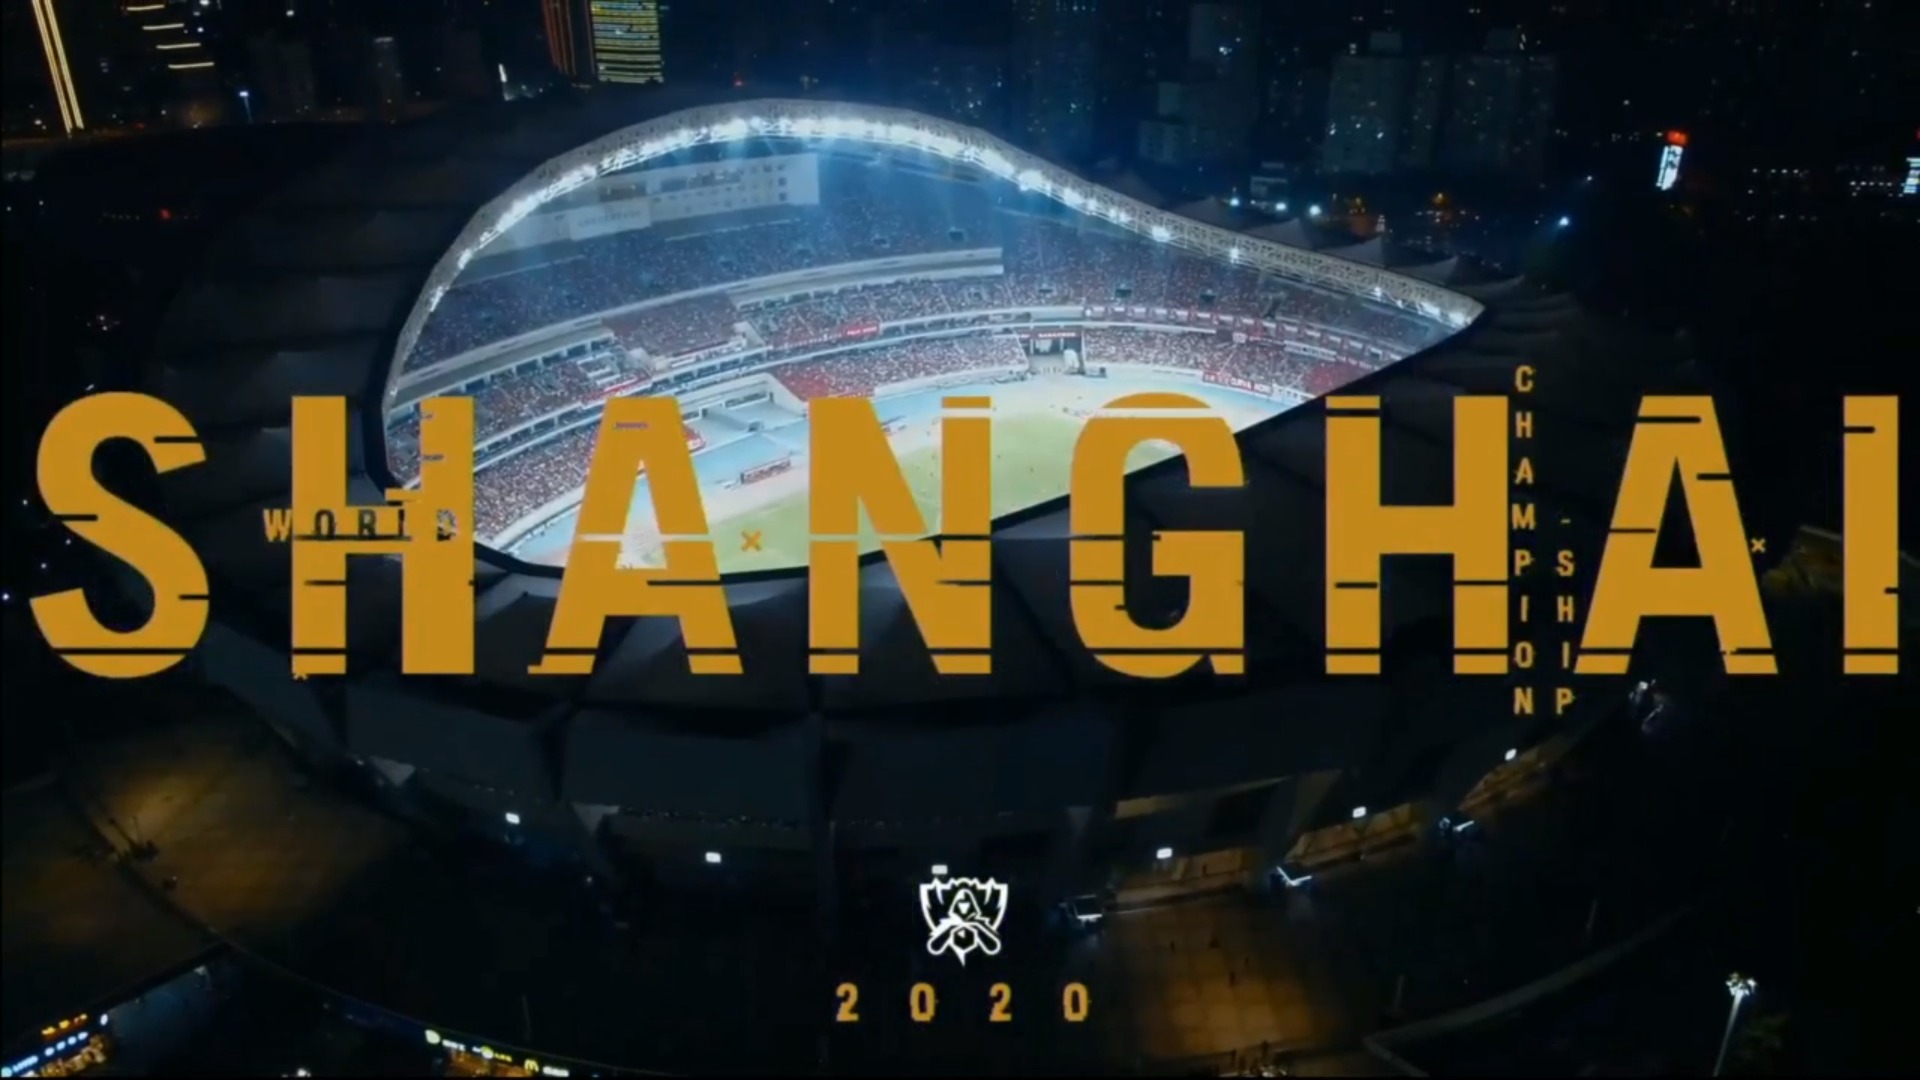 Shanghai será la sede de Worlds 2020 tras el dominio de China